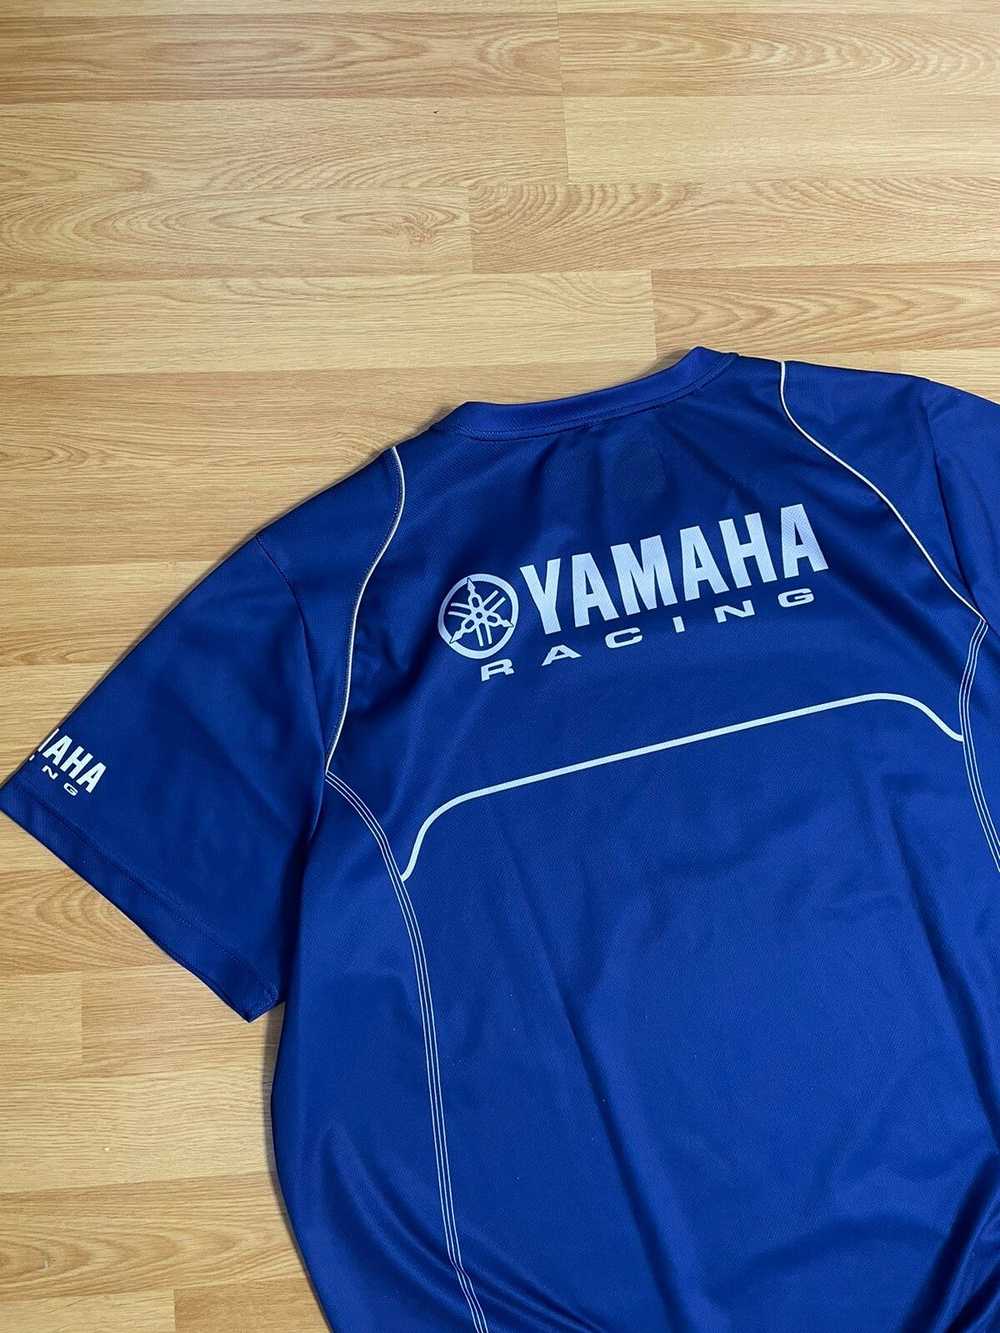 Racing × Vintage × Yamaha Yamaha Racing Paddock O… - image 10